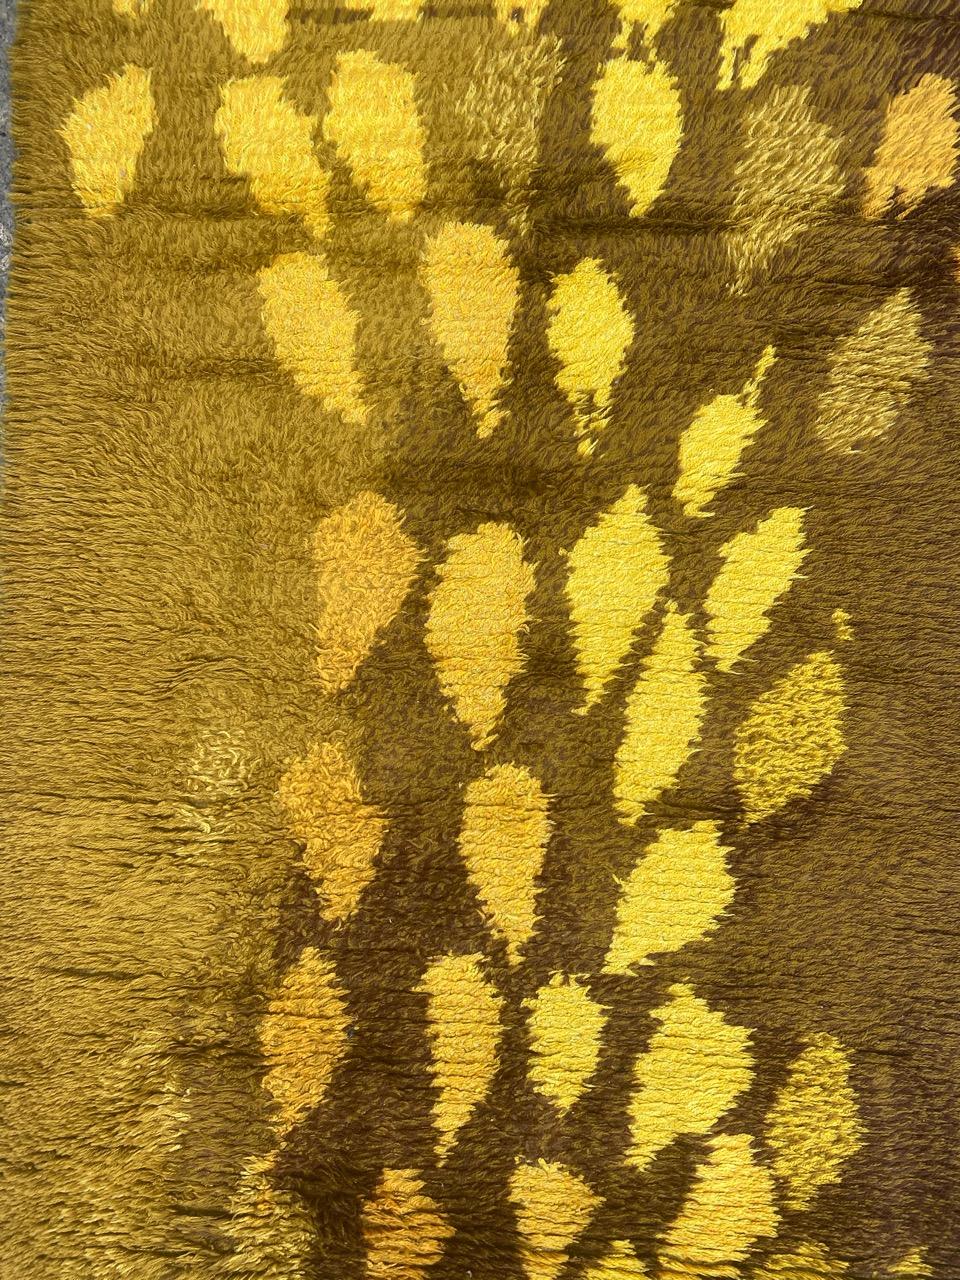 Hübscher skandinavischer Vintage-Teppich mit schönem modernen Design und schöner gelber Feldfarbe, komplett handgeknüpft mit Wollsamt auf Baumwollbasis.

✨✨✨
